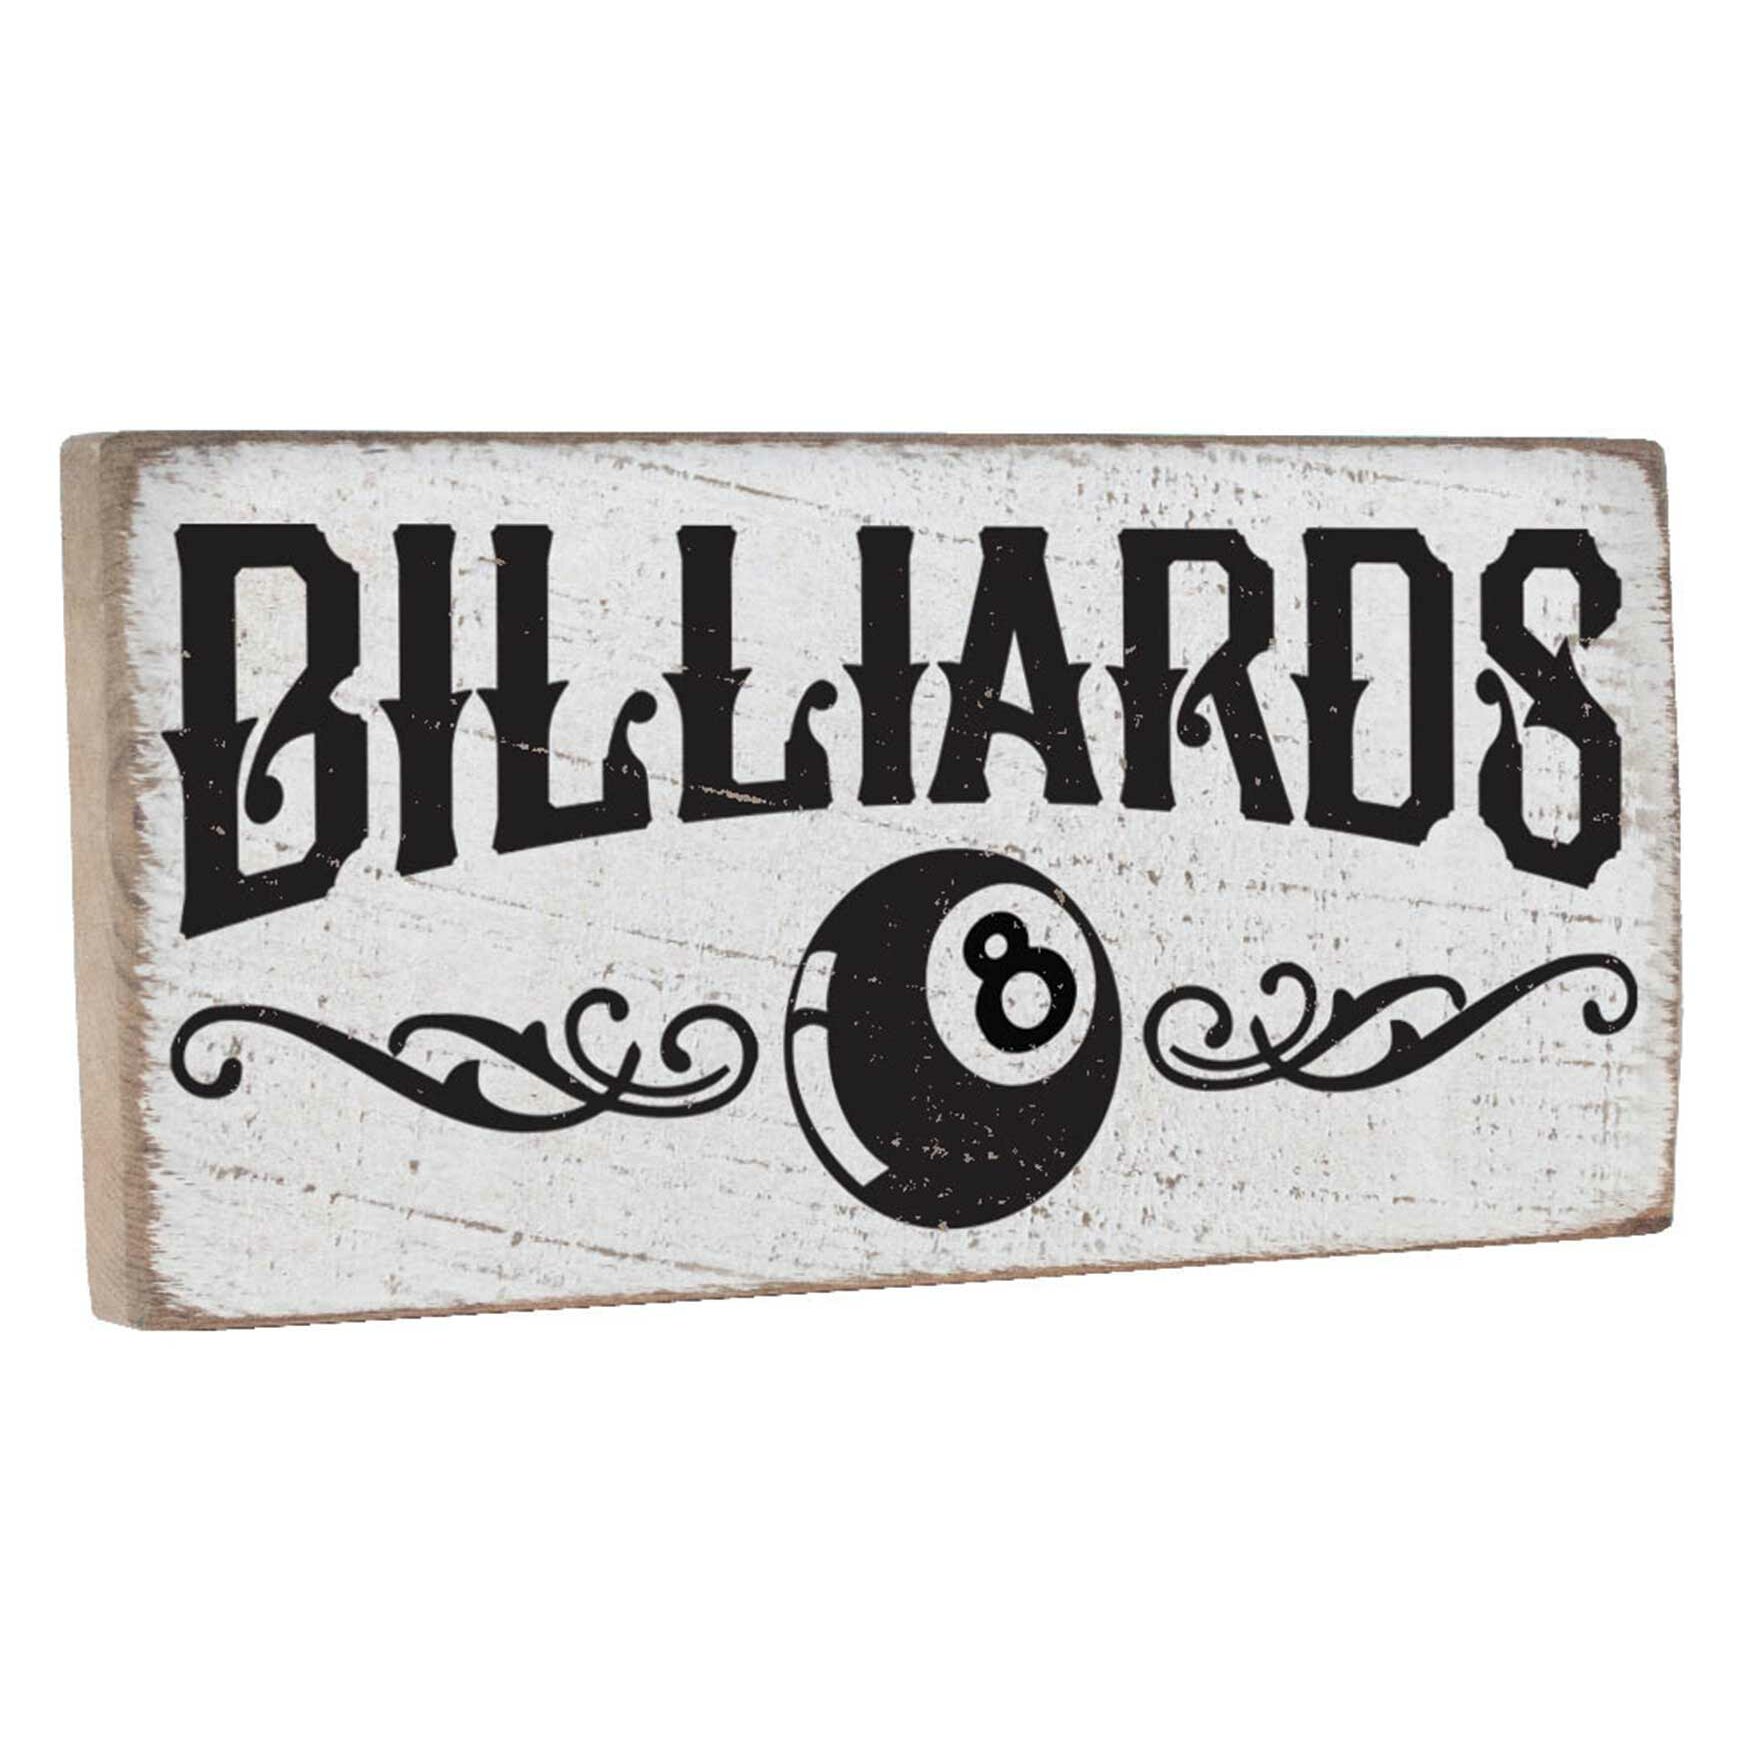 HUGE Billiards 10 Cent Games Sign Rustic Hand Made Vintage Wooden Sign